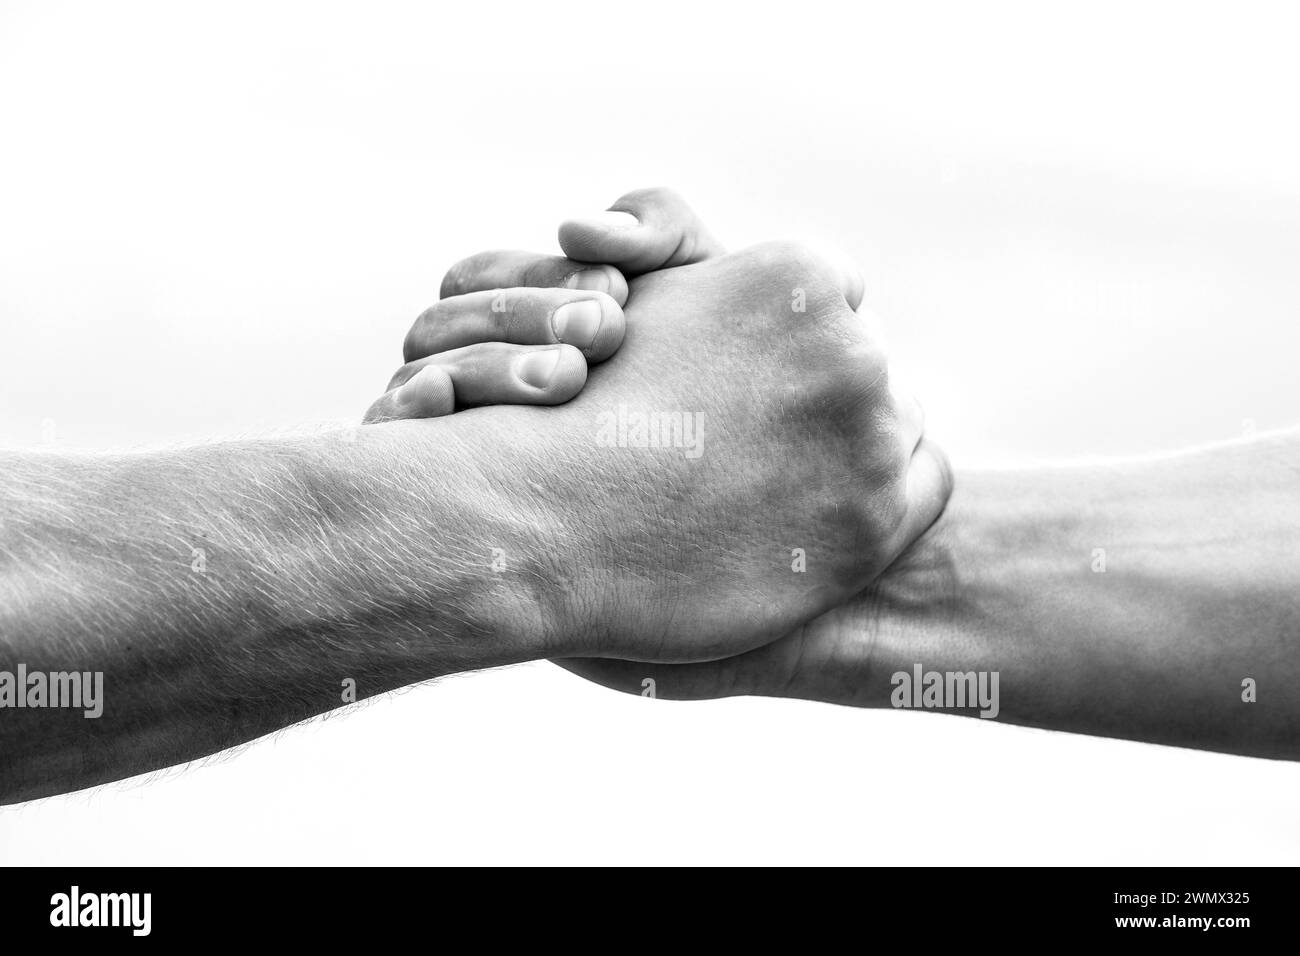 Helfende Hand Konzept und internationaler Tag des Friedens, der Unterstützung. Nahaufnahme. Hilfe Hand ausgestreckt, isolierter Arm, Rettung. Freundlicher Handschlag. Zwei Stockfoto